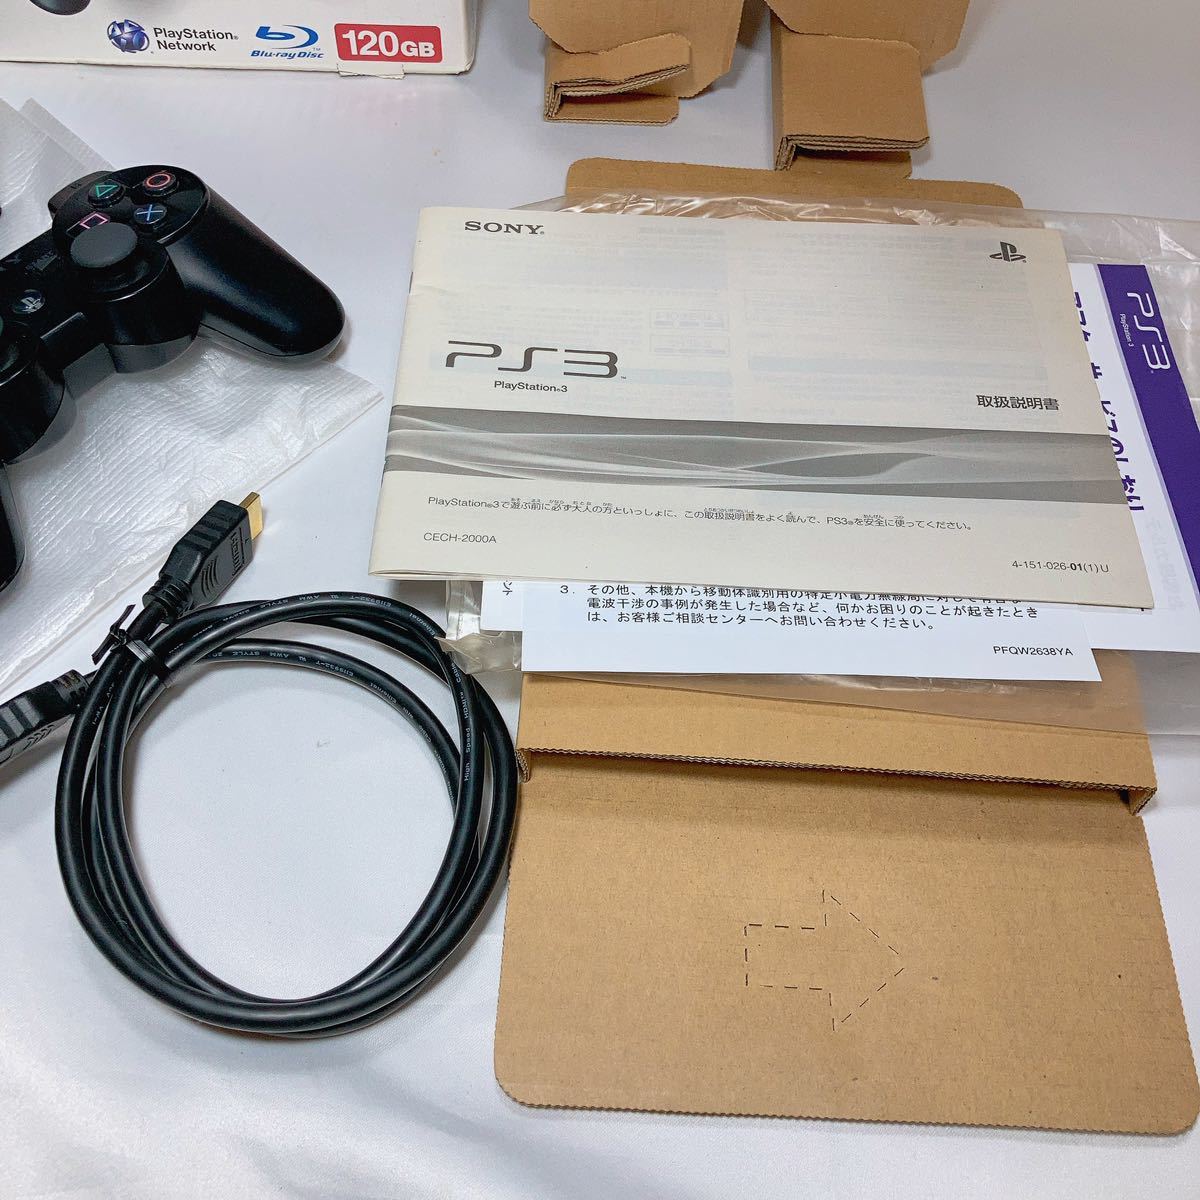 美品】 PS3 本体CECH-2000A 120GB ブラック箱縦置きスタンド付き完品